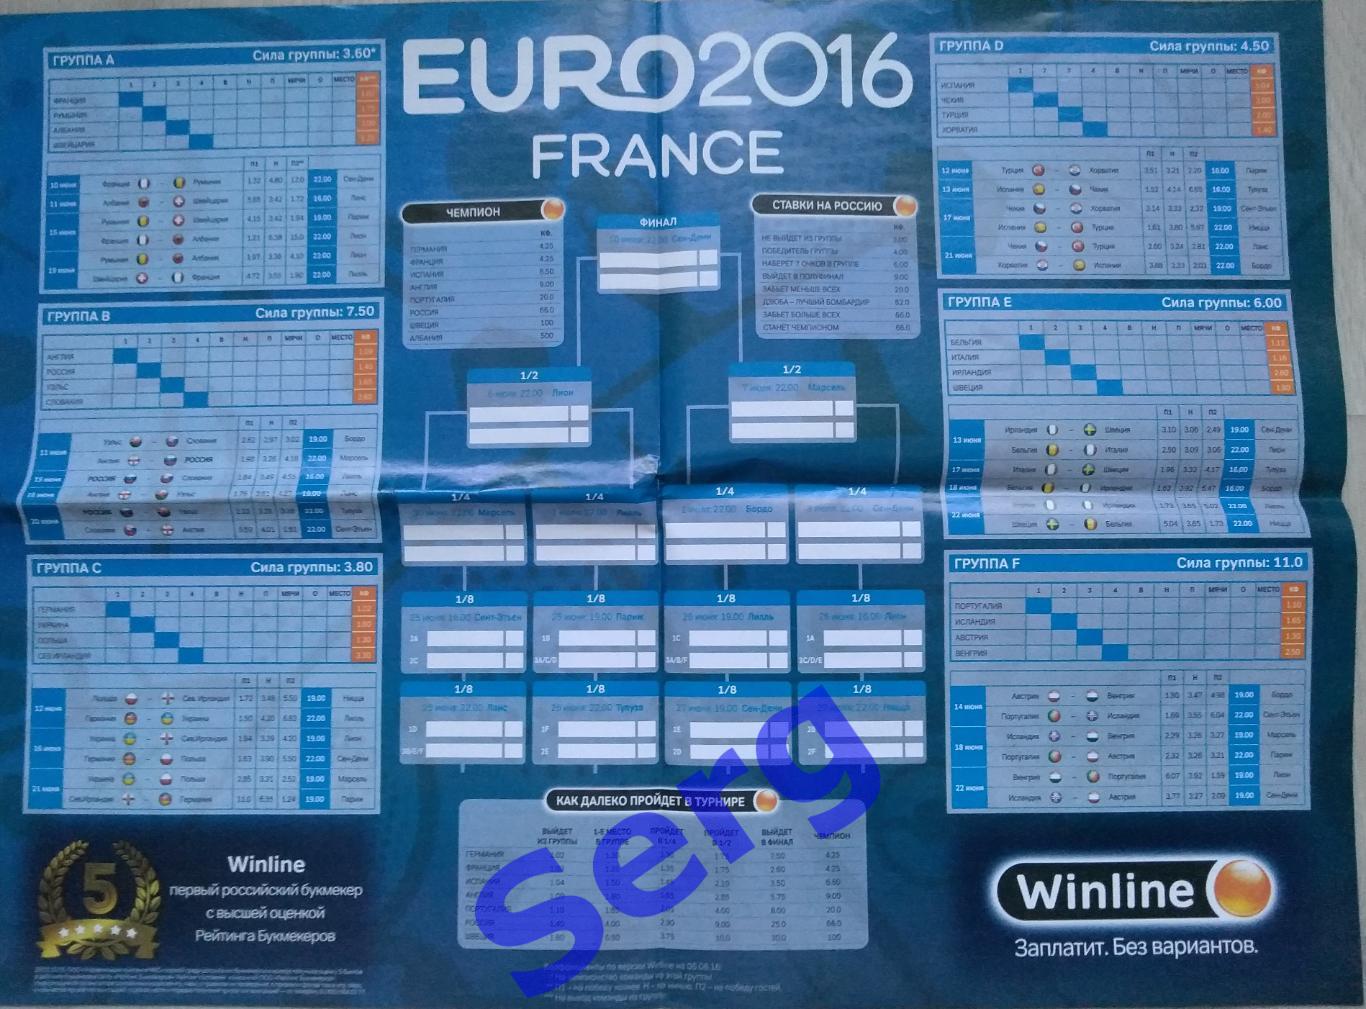 Таблицы-шахматки для заполнения и календарь игр из СЭ. Чемпионат Европы-2016.